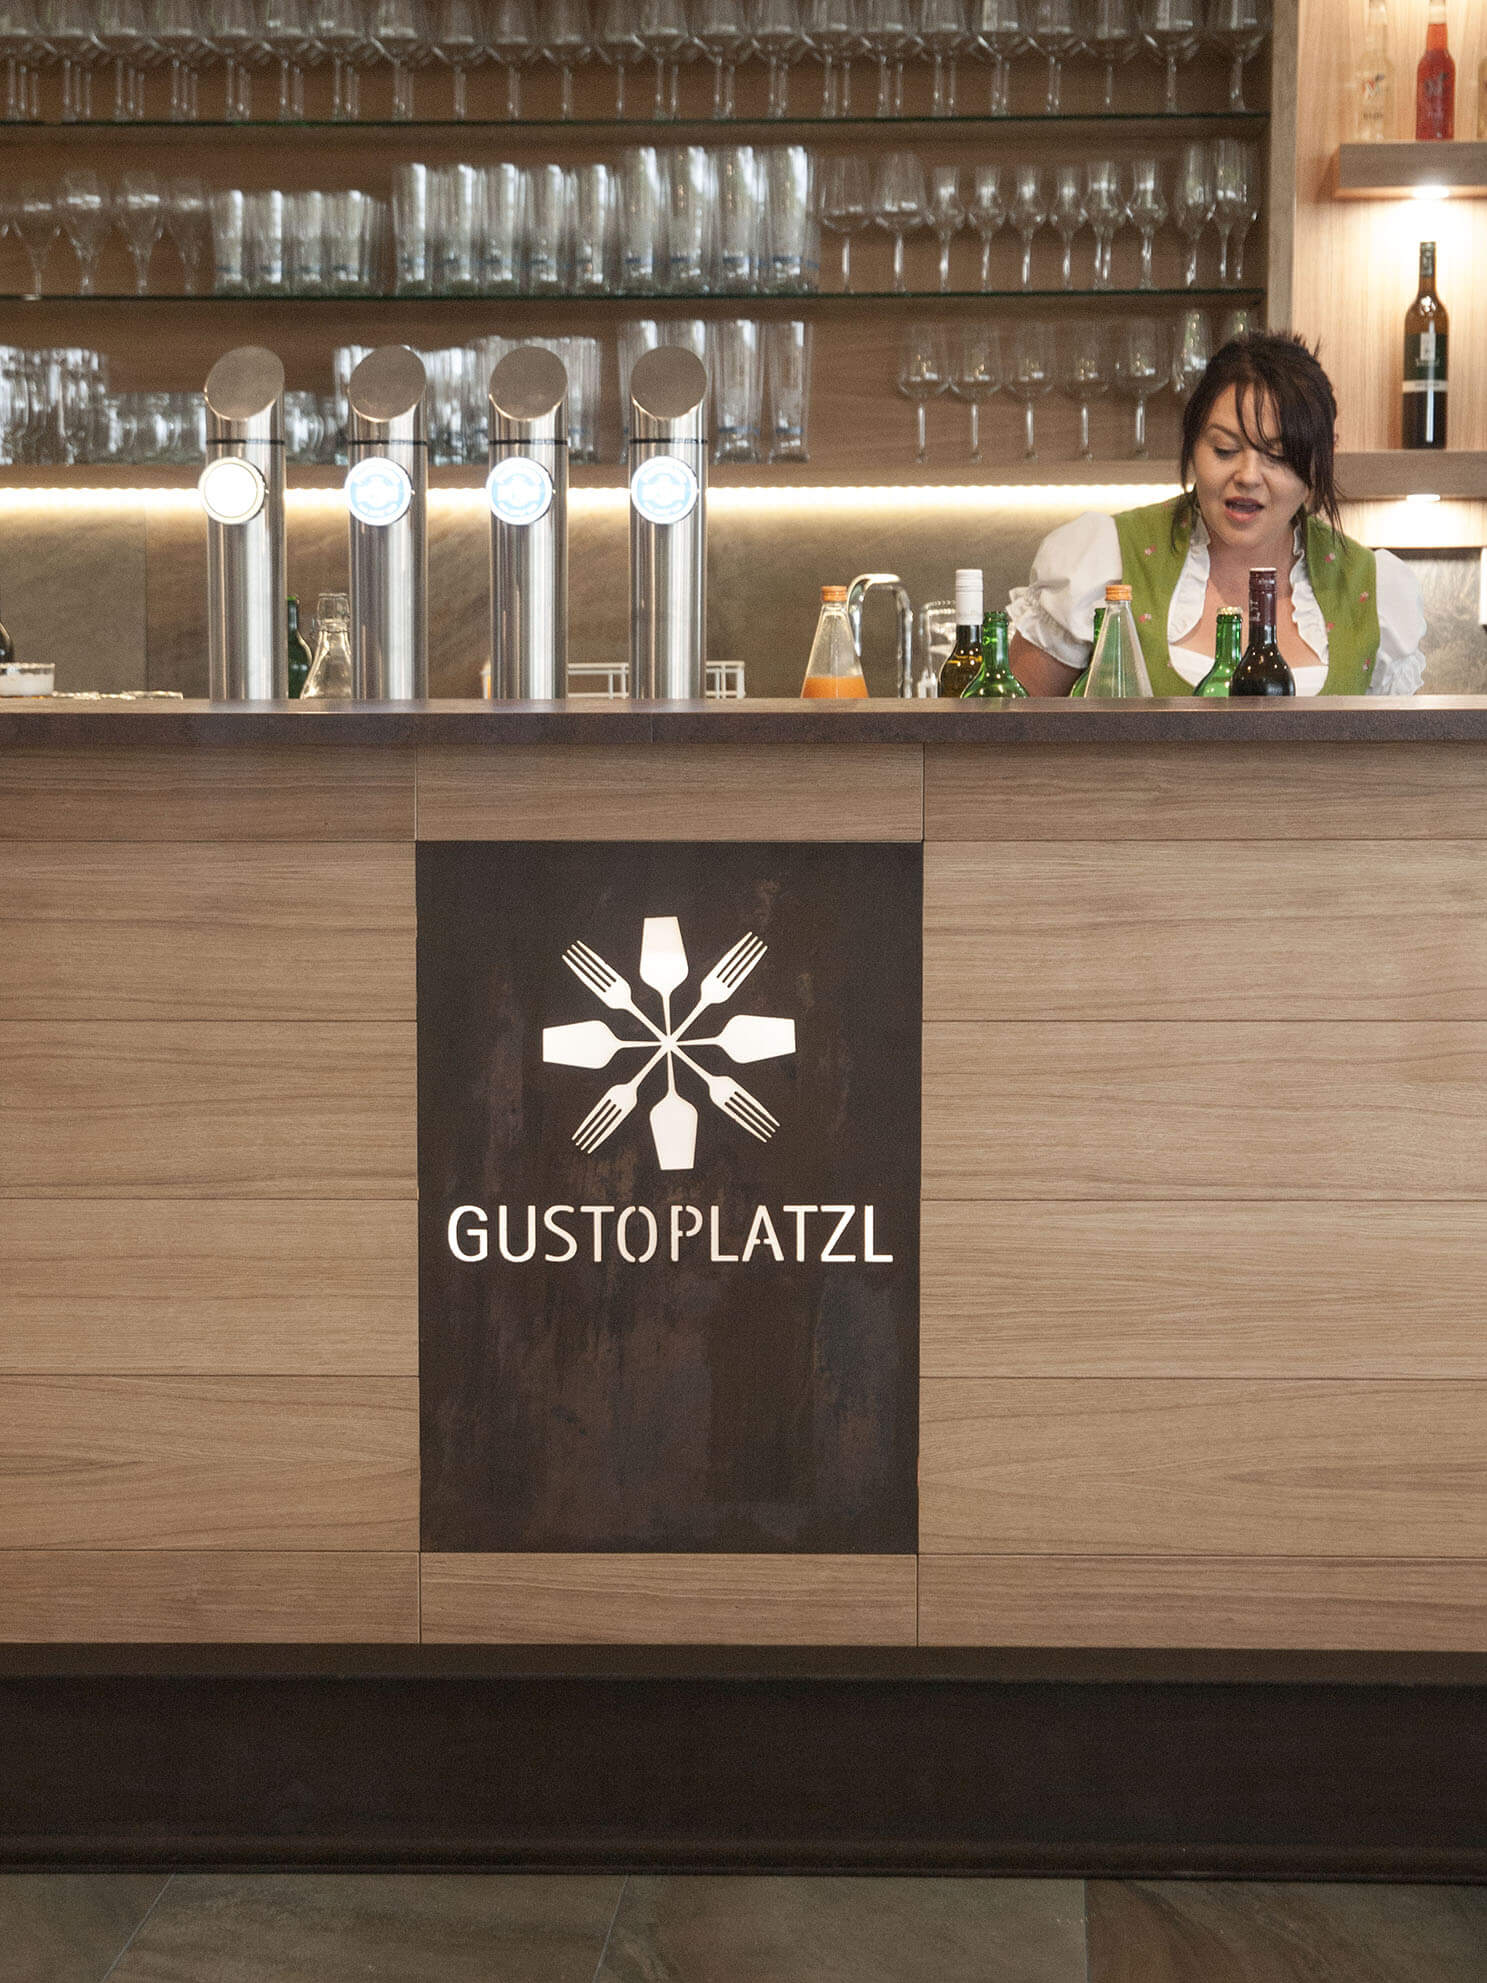 gustoplatzl, Corporate Design, Logo, Werbung, Klappotetz, Weinschenke, Rost, Klöch, Tomaschitz, 